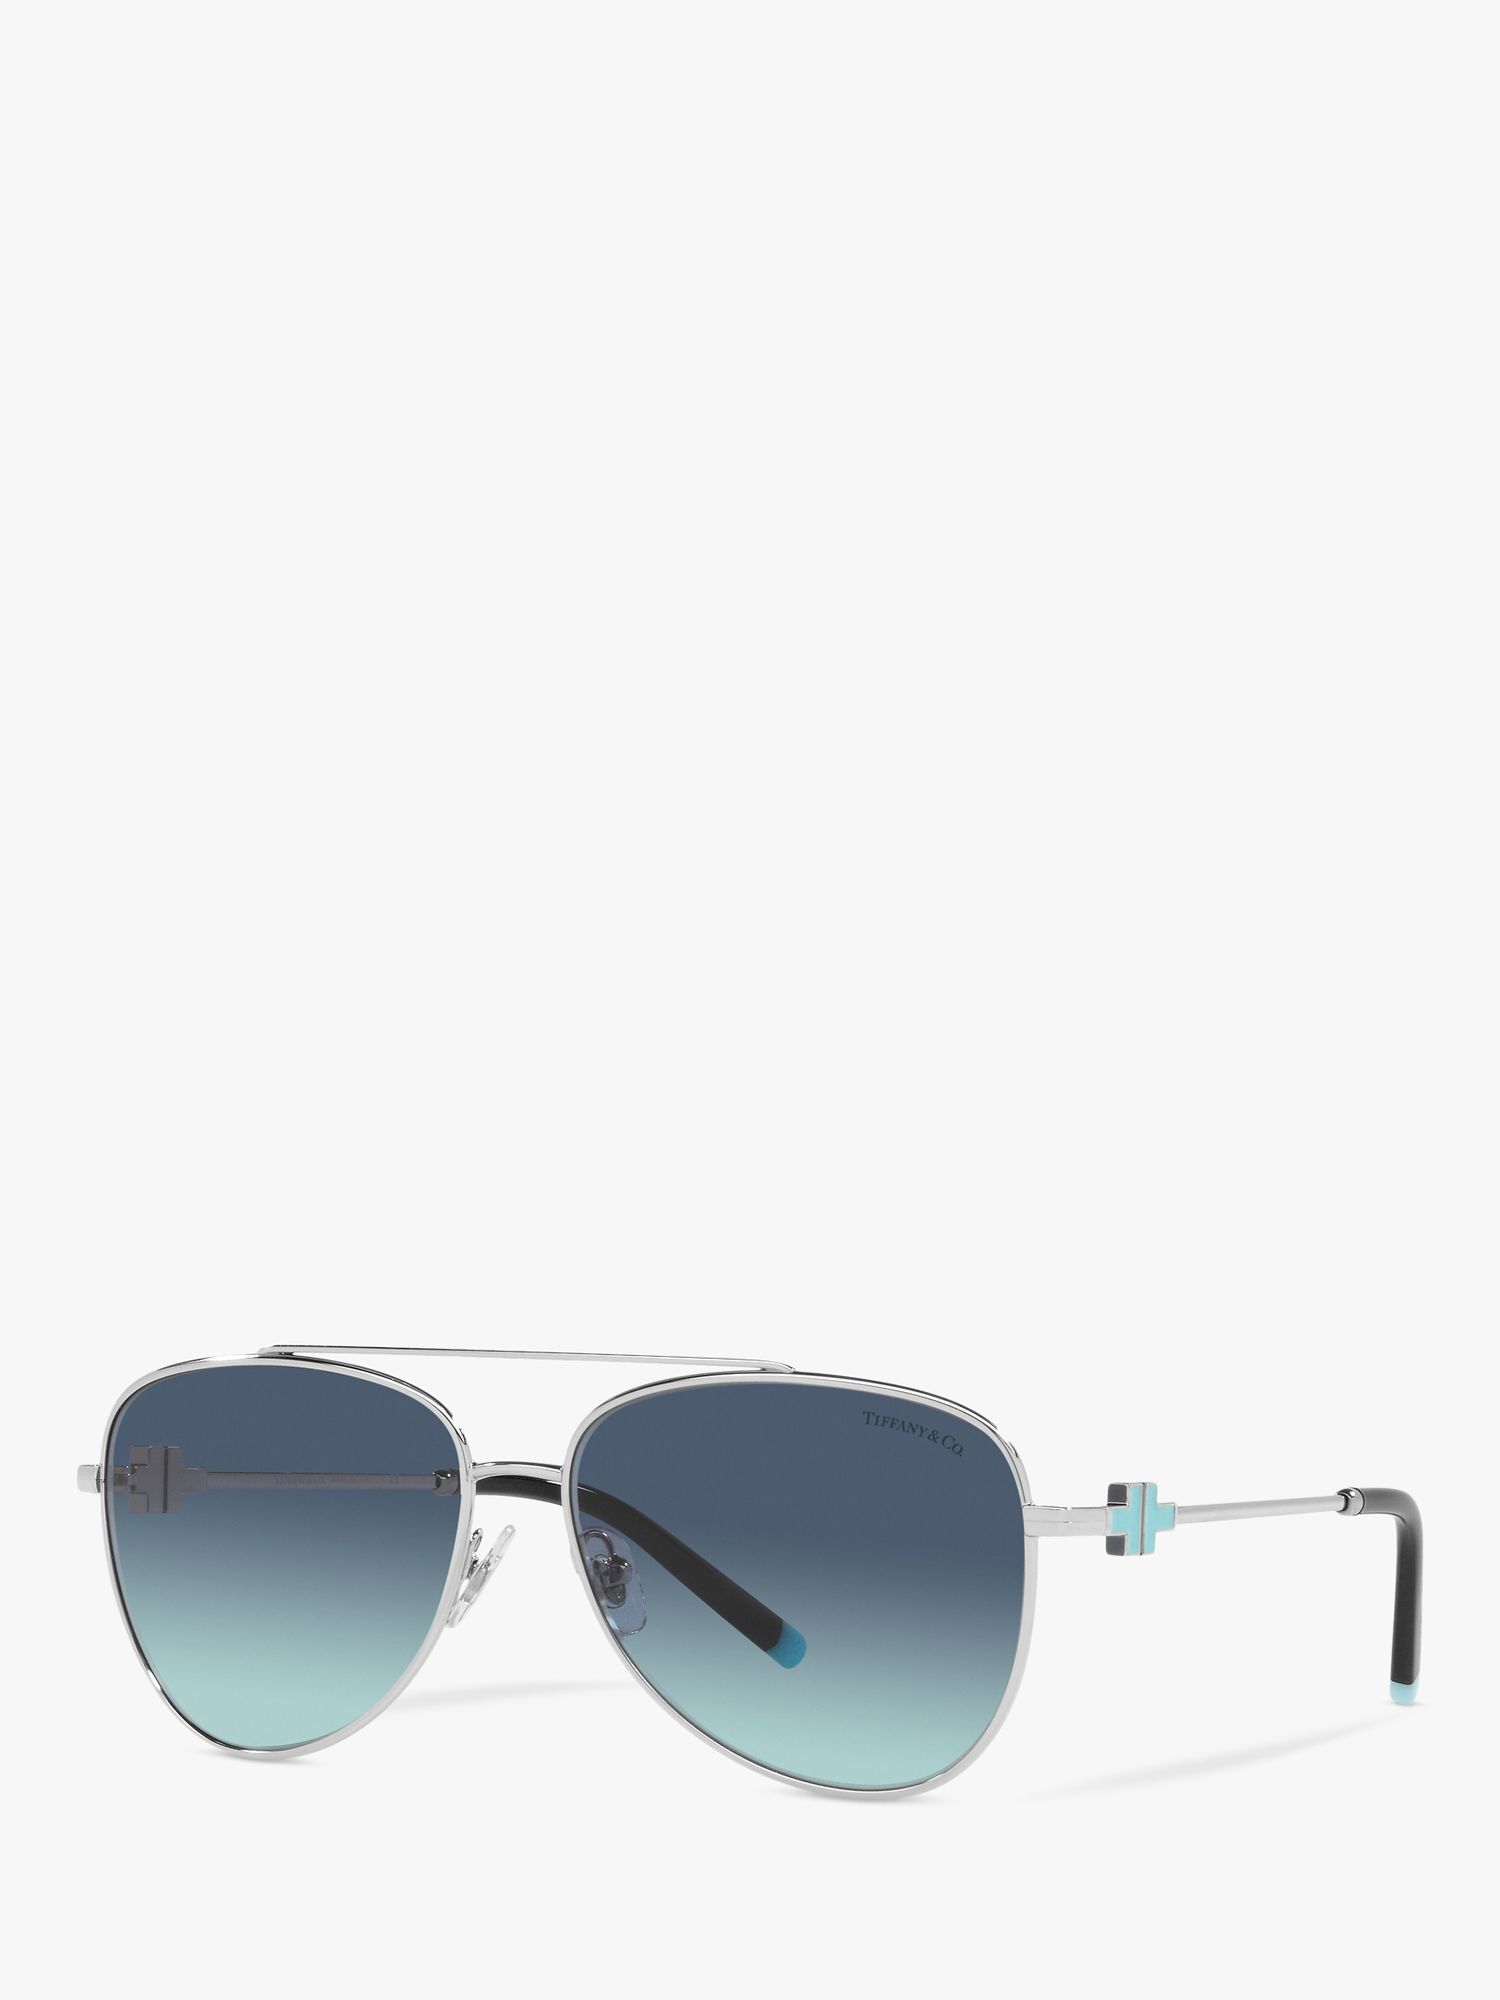 Tiffany & Co TF3080 Women's Aviator Sunglasses, Shiny Silver/Blue ...